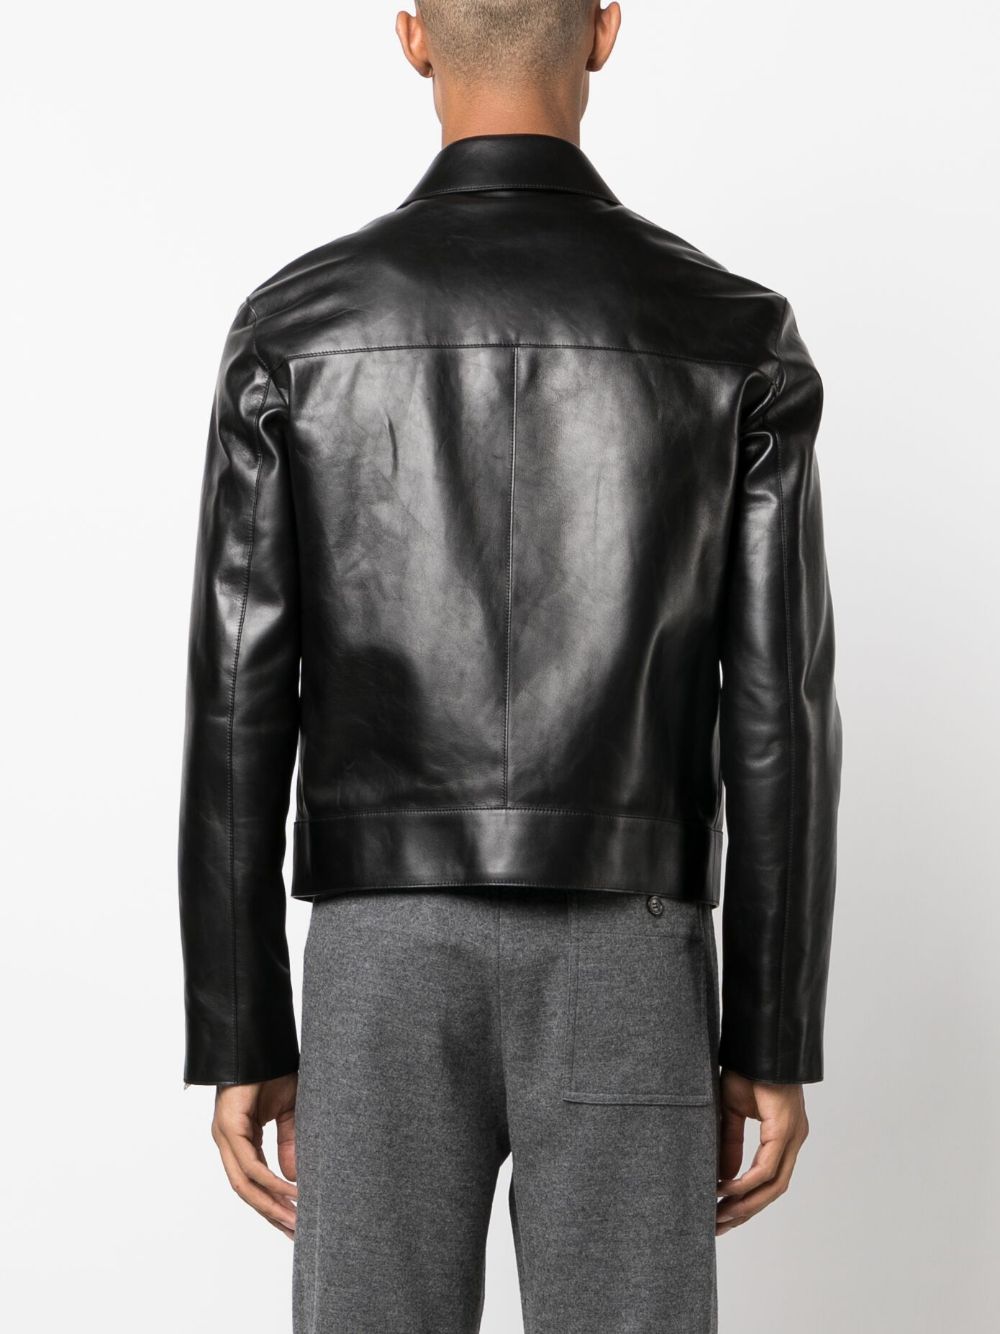 Lanvin zip-up Leather Jacket - Farfetch